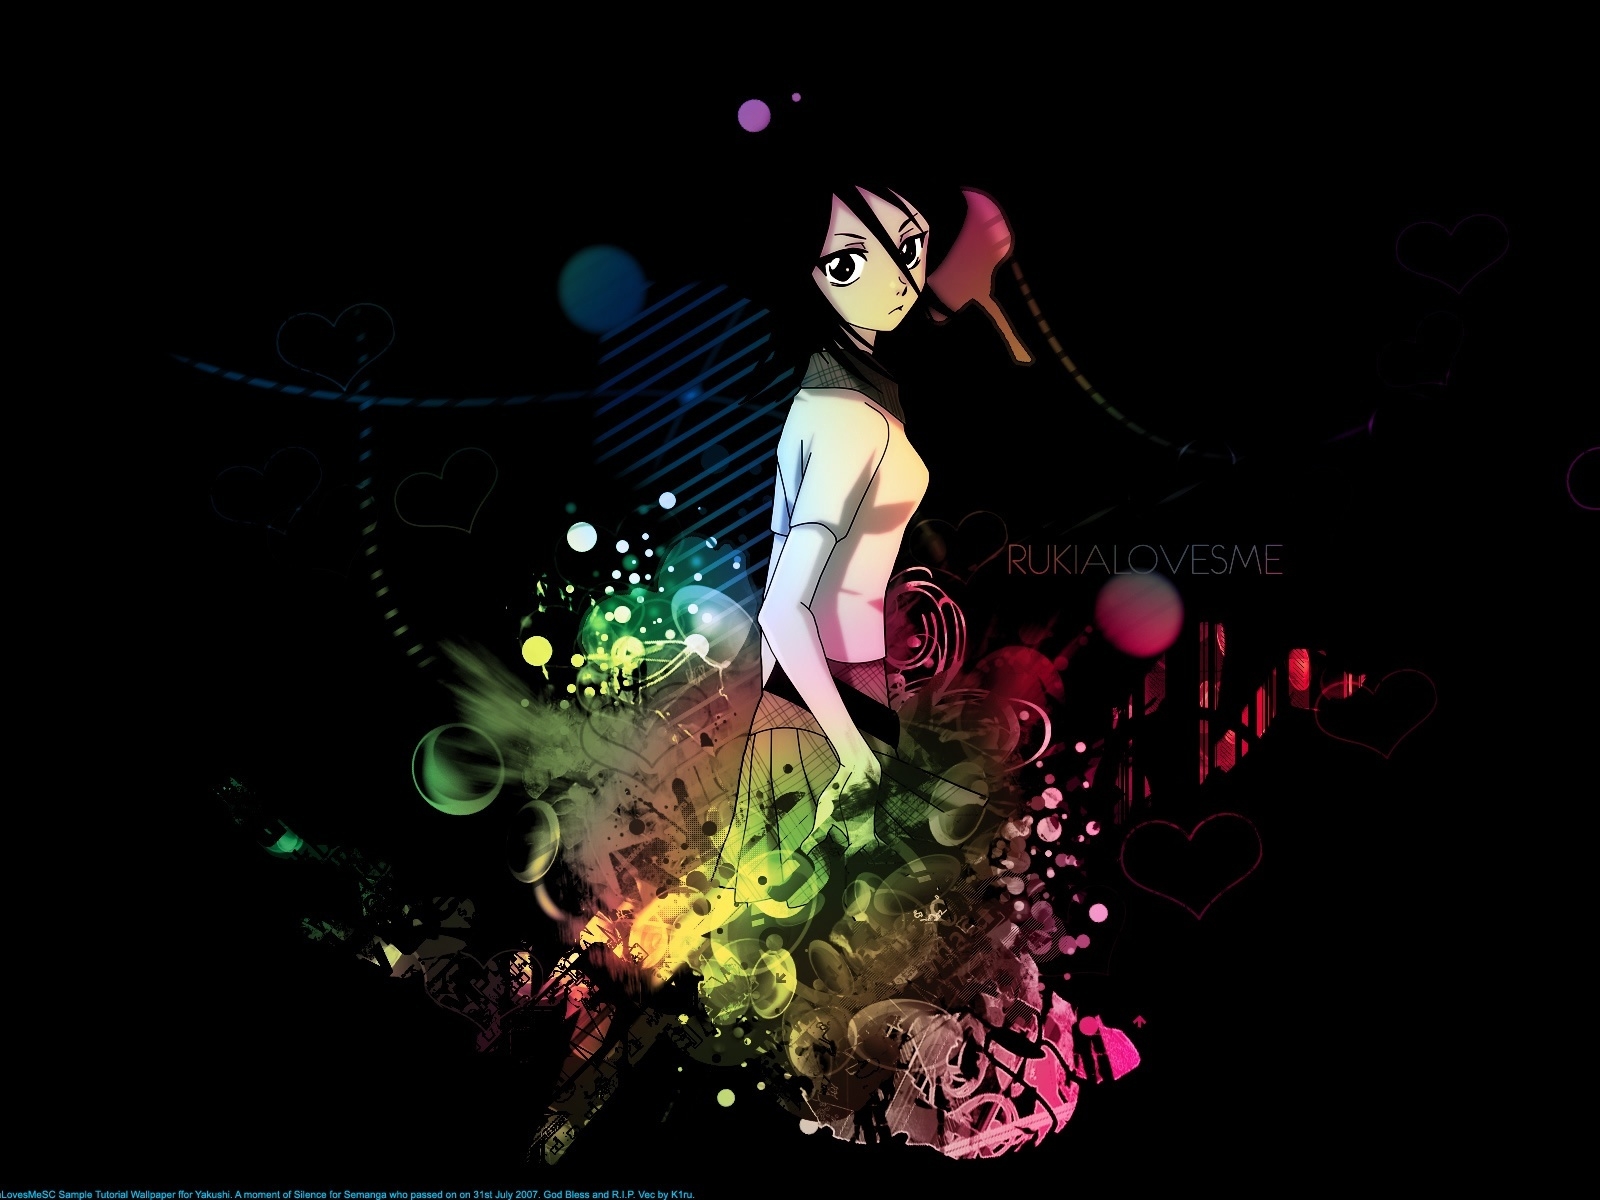 Bleach Rukia for 1600 x 1200 resolution